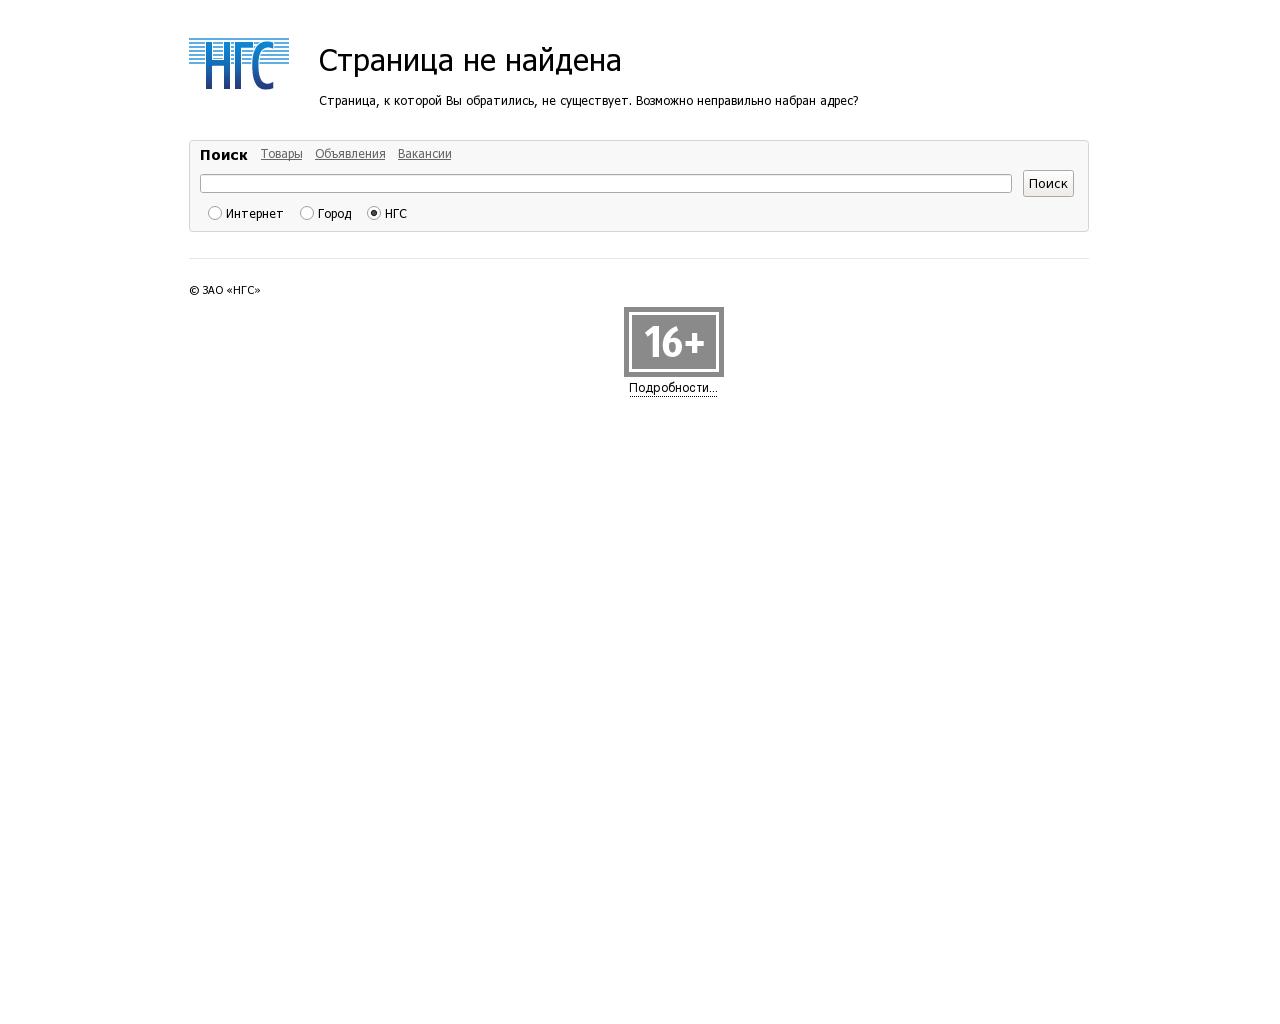 Изображение сайта ngs16.ru в разрешении 1280x1024